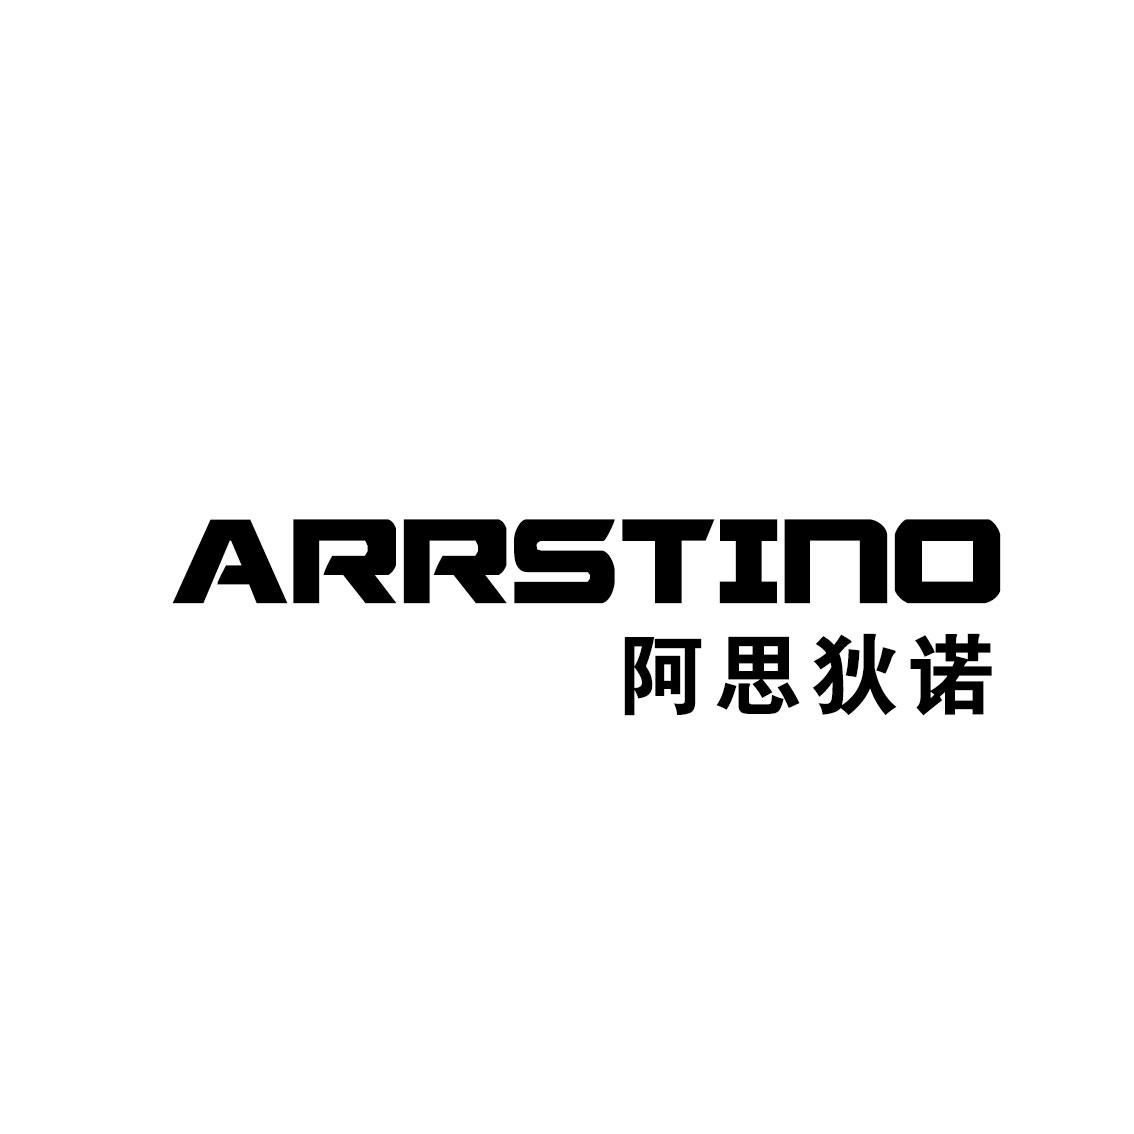 12类-运输装置阿思狄诺 ARRSTINO商标转让